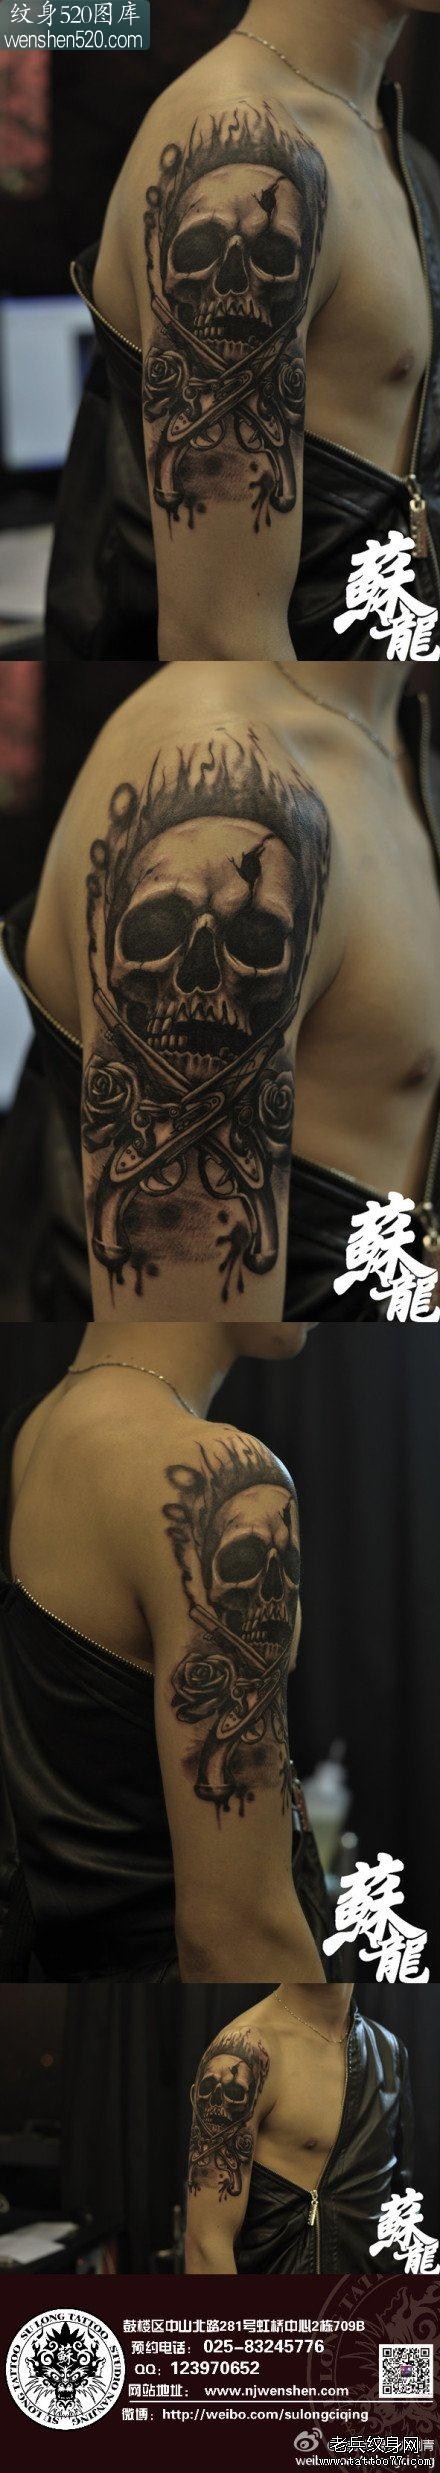 男人手臂帅气的骷髅与手枪纹身图案